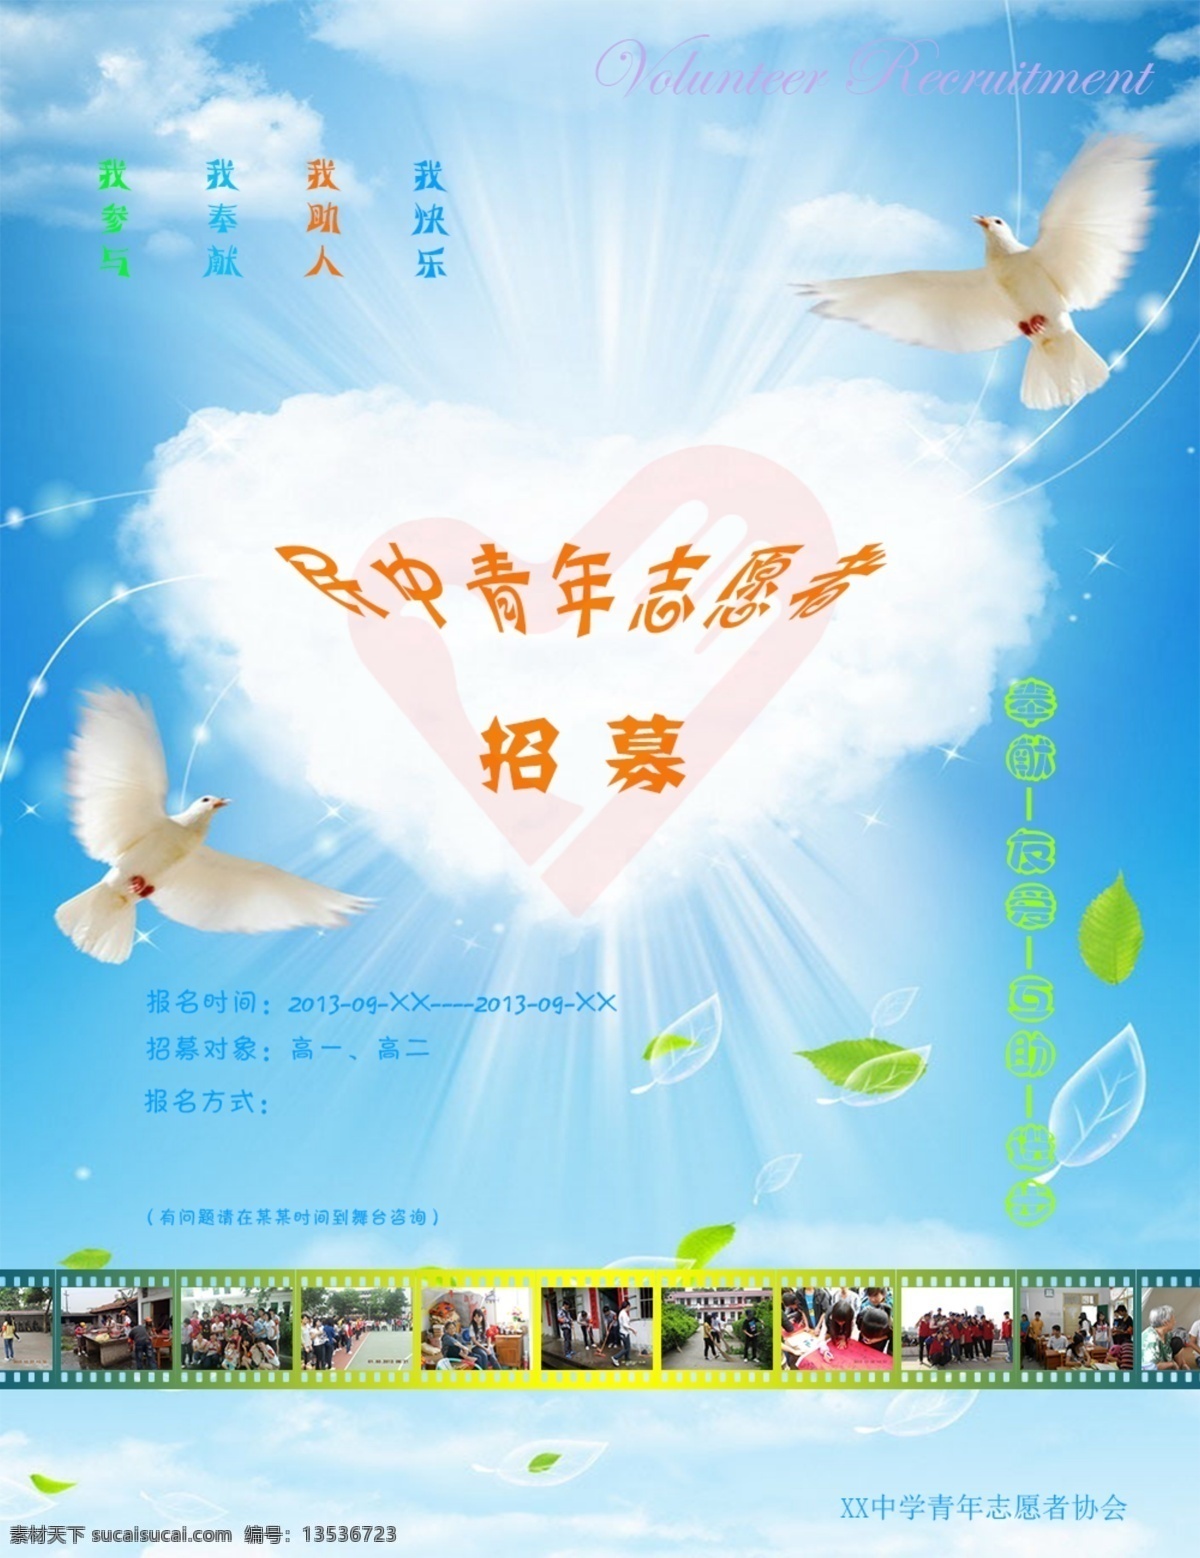 志愿者 招募 鸽子 广告设计模板 心 叶子 源文件 云 照片 招聘海报